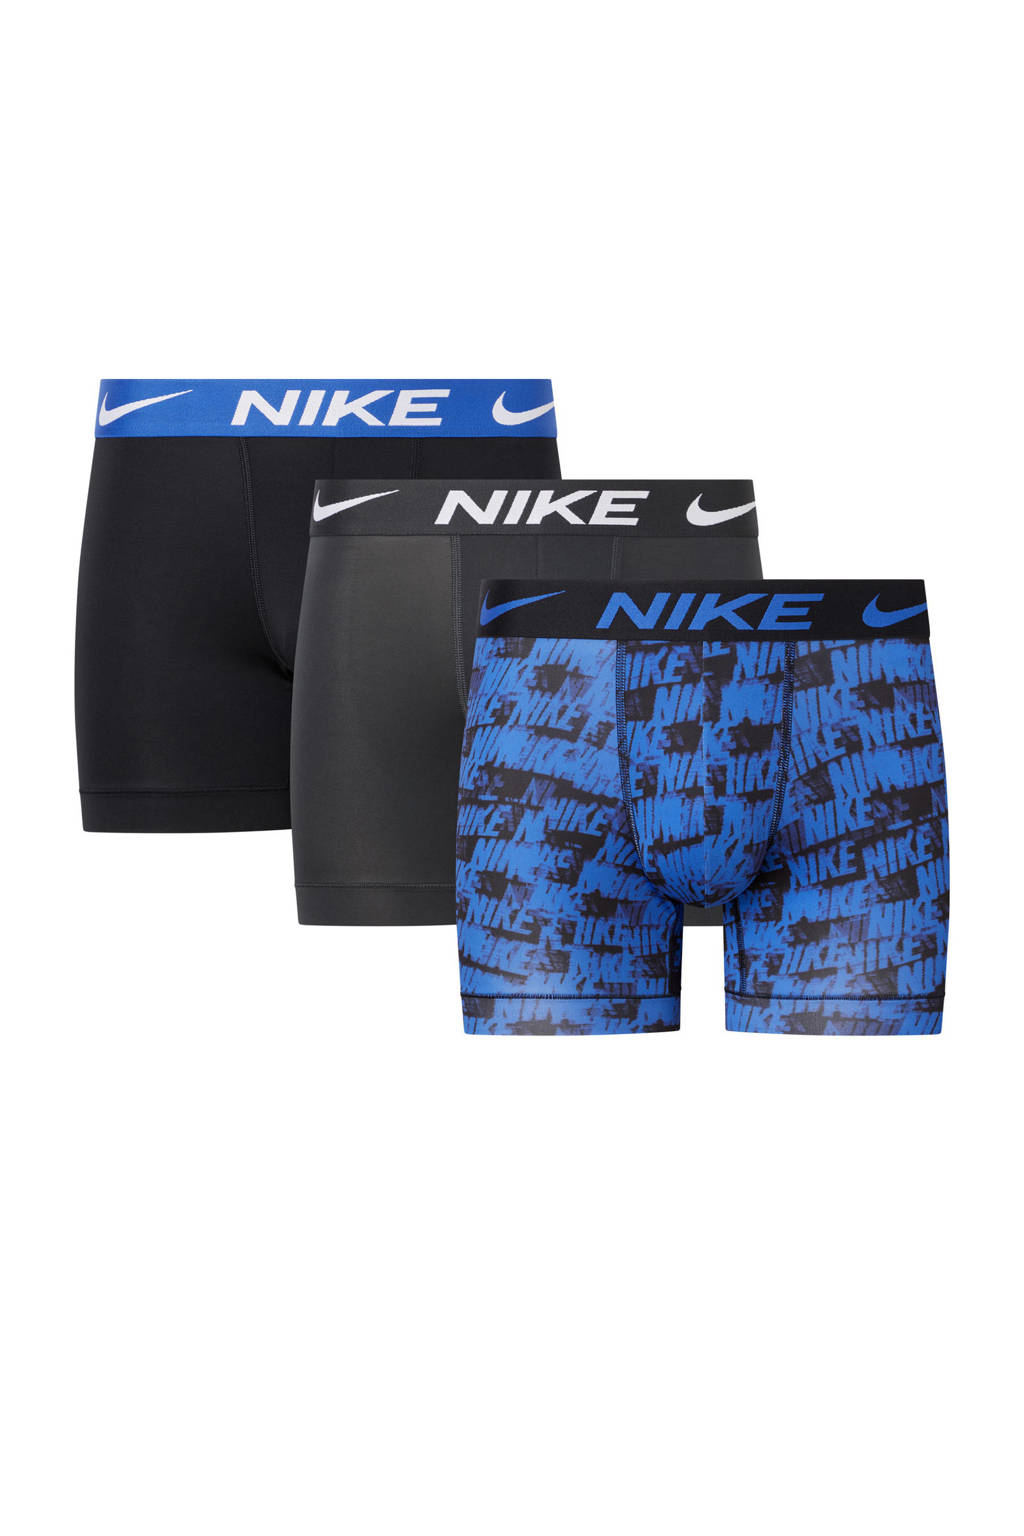 Nike microfiber Dri-FIT sportboxer (set van 3) blauw/grijs/zwart, Blauw/Grijs/Zwart